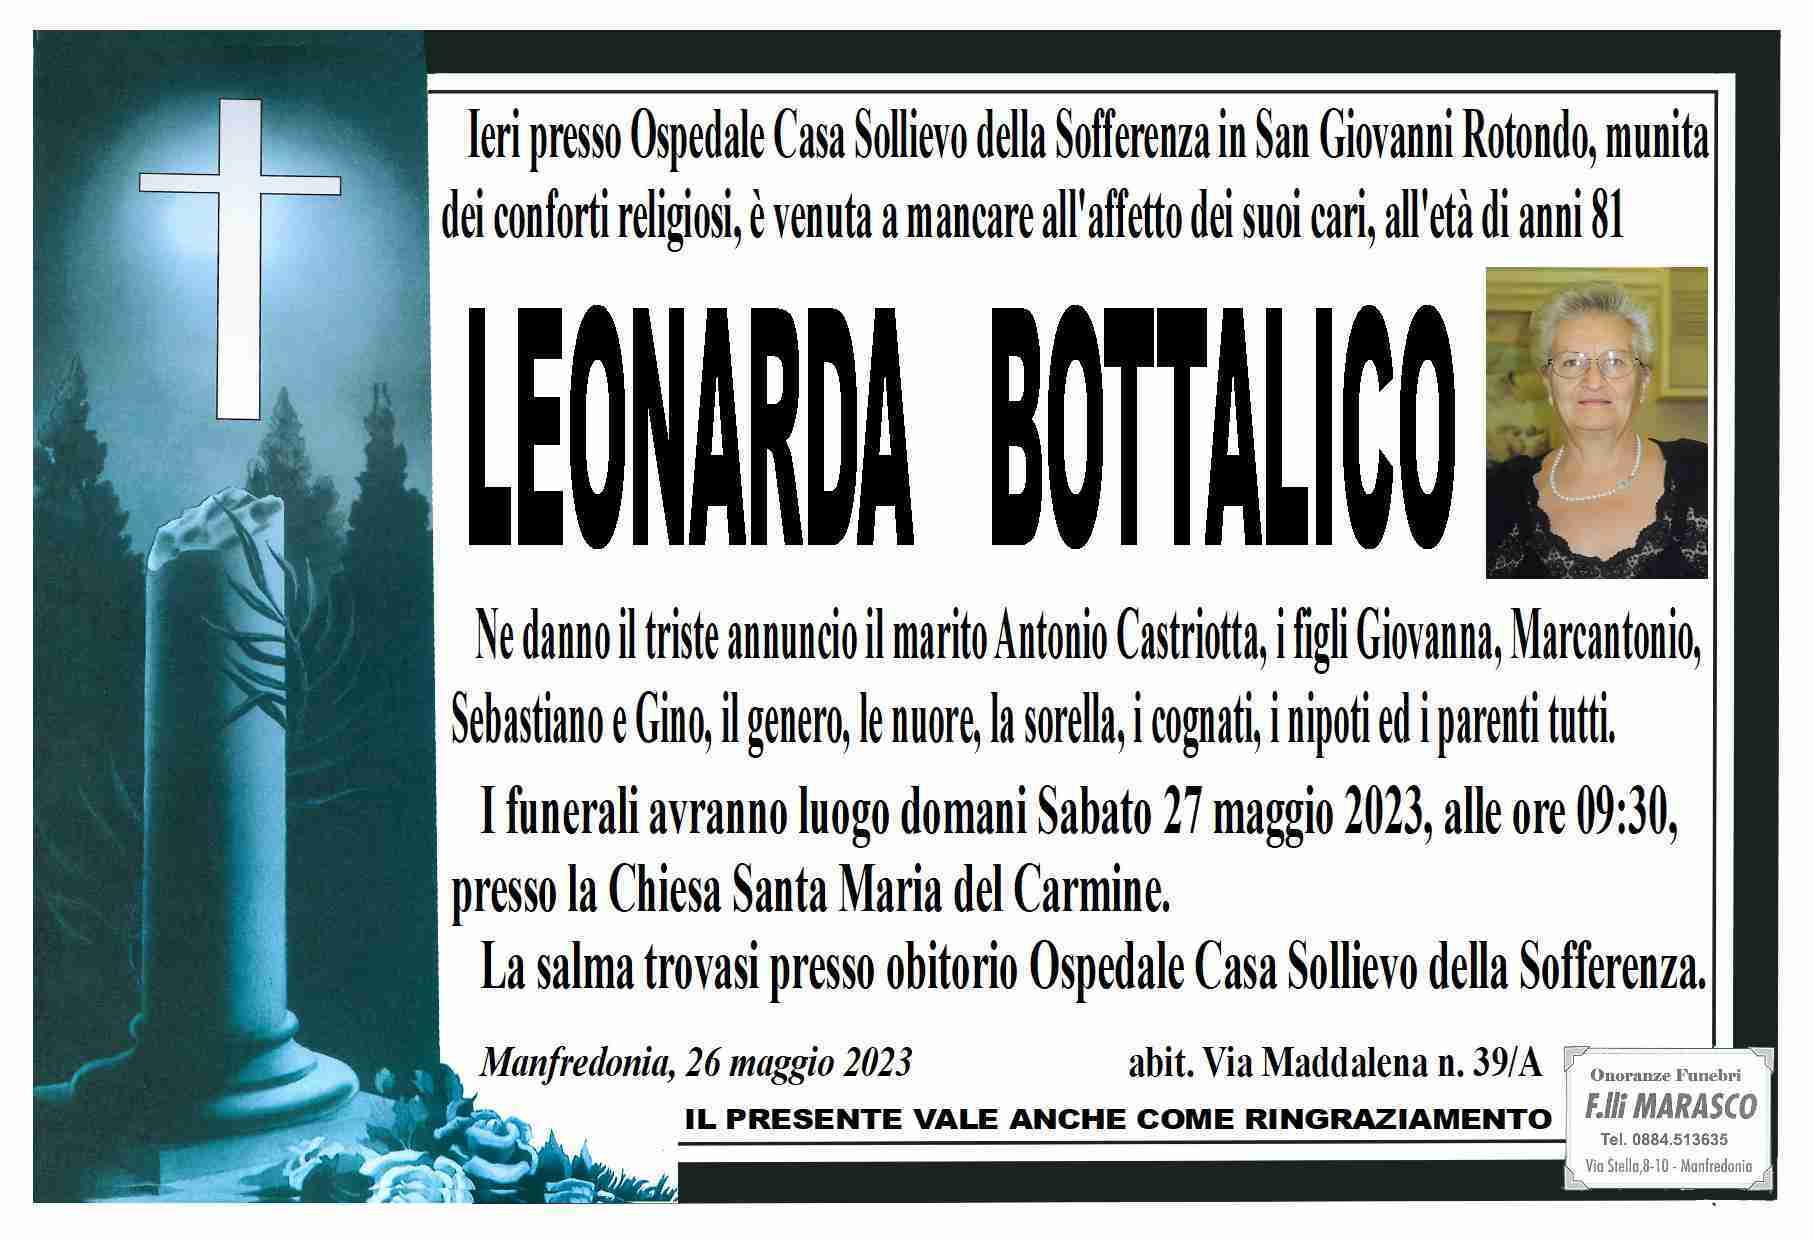 Leonarda Bottalico